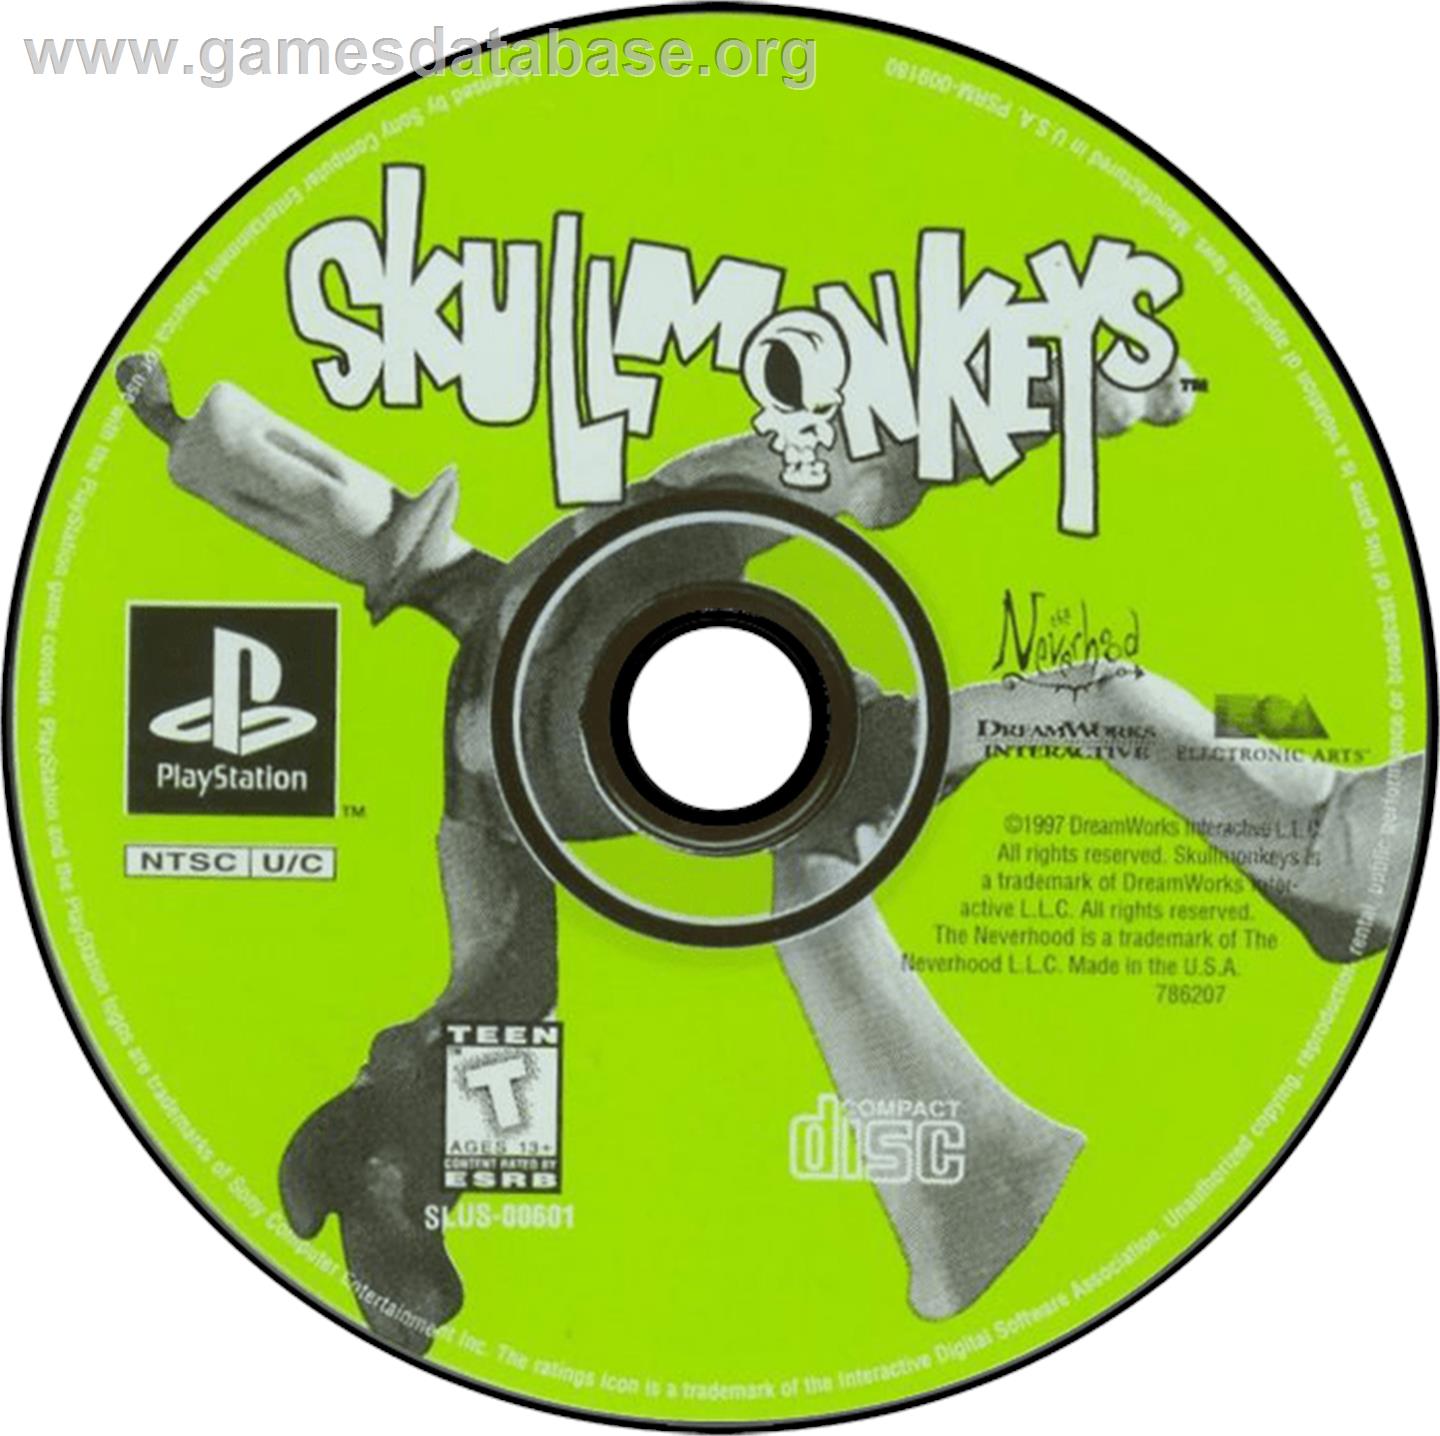 Skullmonkeys - Sony Playstation - Artwork - Disc